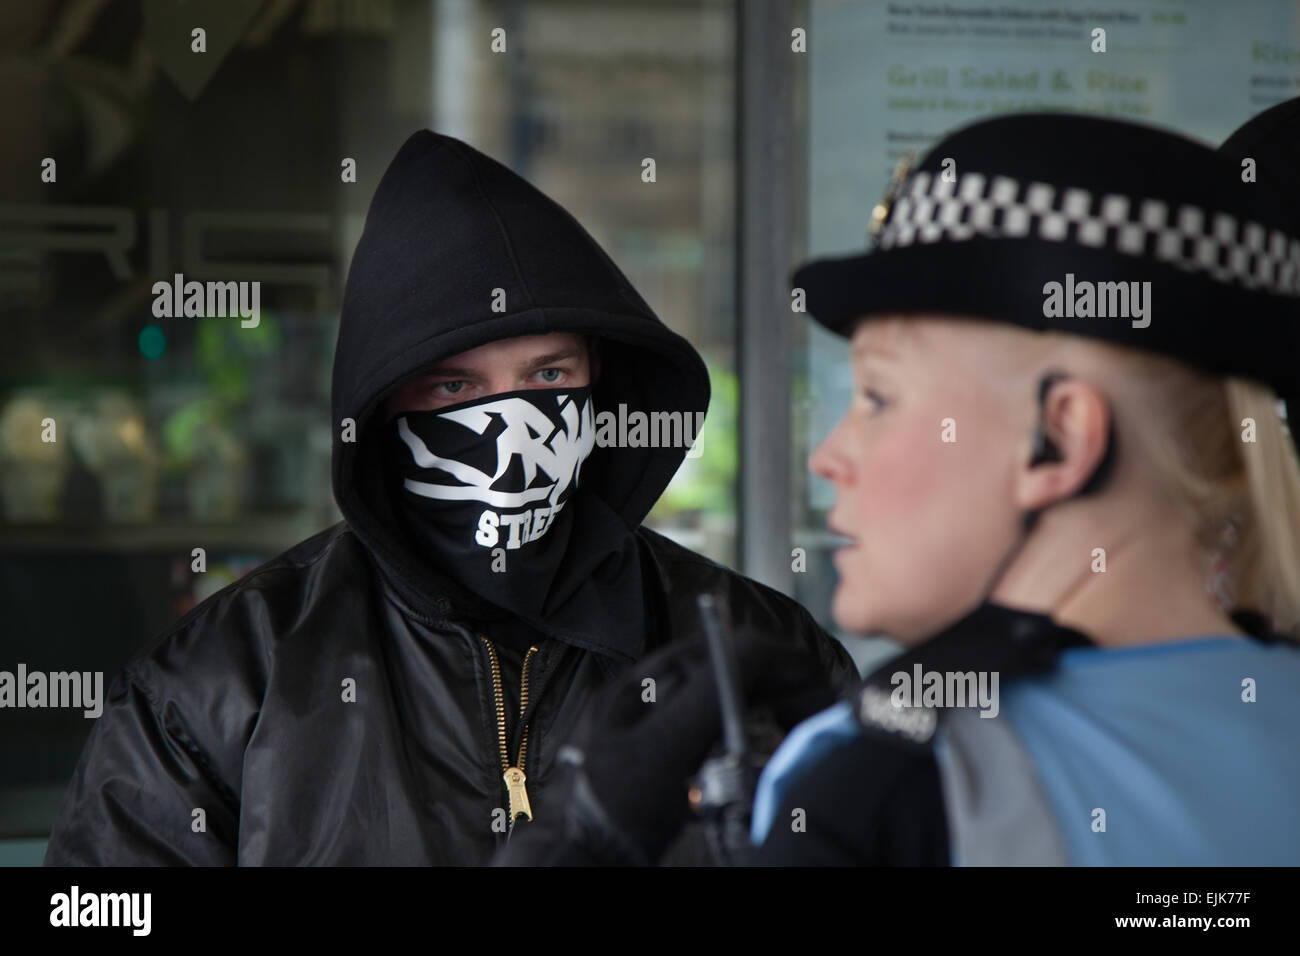 Dimostratore mascherato al National Front neo-nazista rally & White Pride Demo a Piccadilly Manchester affronta una poliziotto. Arresti effettuati fino a destra 'White Pride' gruppo riuniti a Manchester per la fase di una dimostrazione. Circa 50 membri del gruppo agitarono bandiere e marciarono attraverso i Piccadilly Gardens. Gli attivisti antifascisti hanno organizzato una contromondimostrazione con la polizia che separa le due parti. La polizia di Greater Manchester ha detto che sono stati fatti due arresti, uno per una violazione della pace. Il secondo è stato anche tenuto per un reato di ordine pubblico. Foto Stock